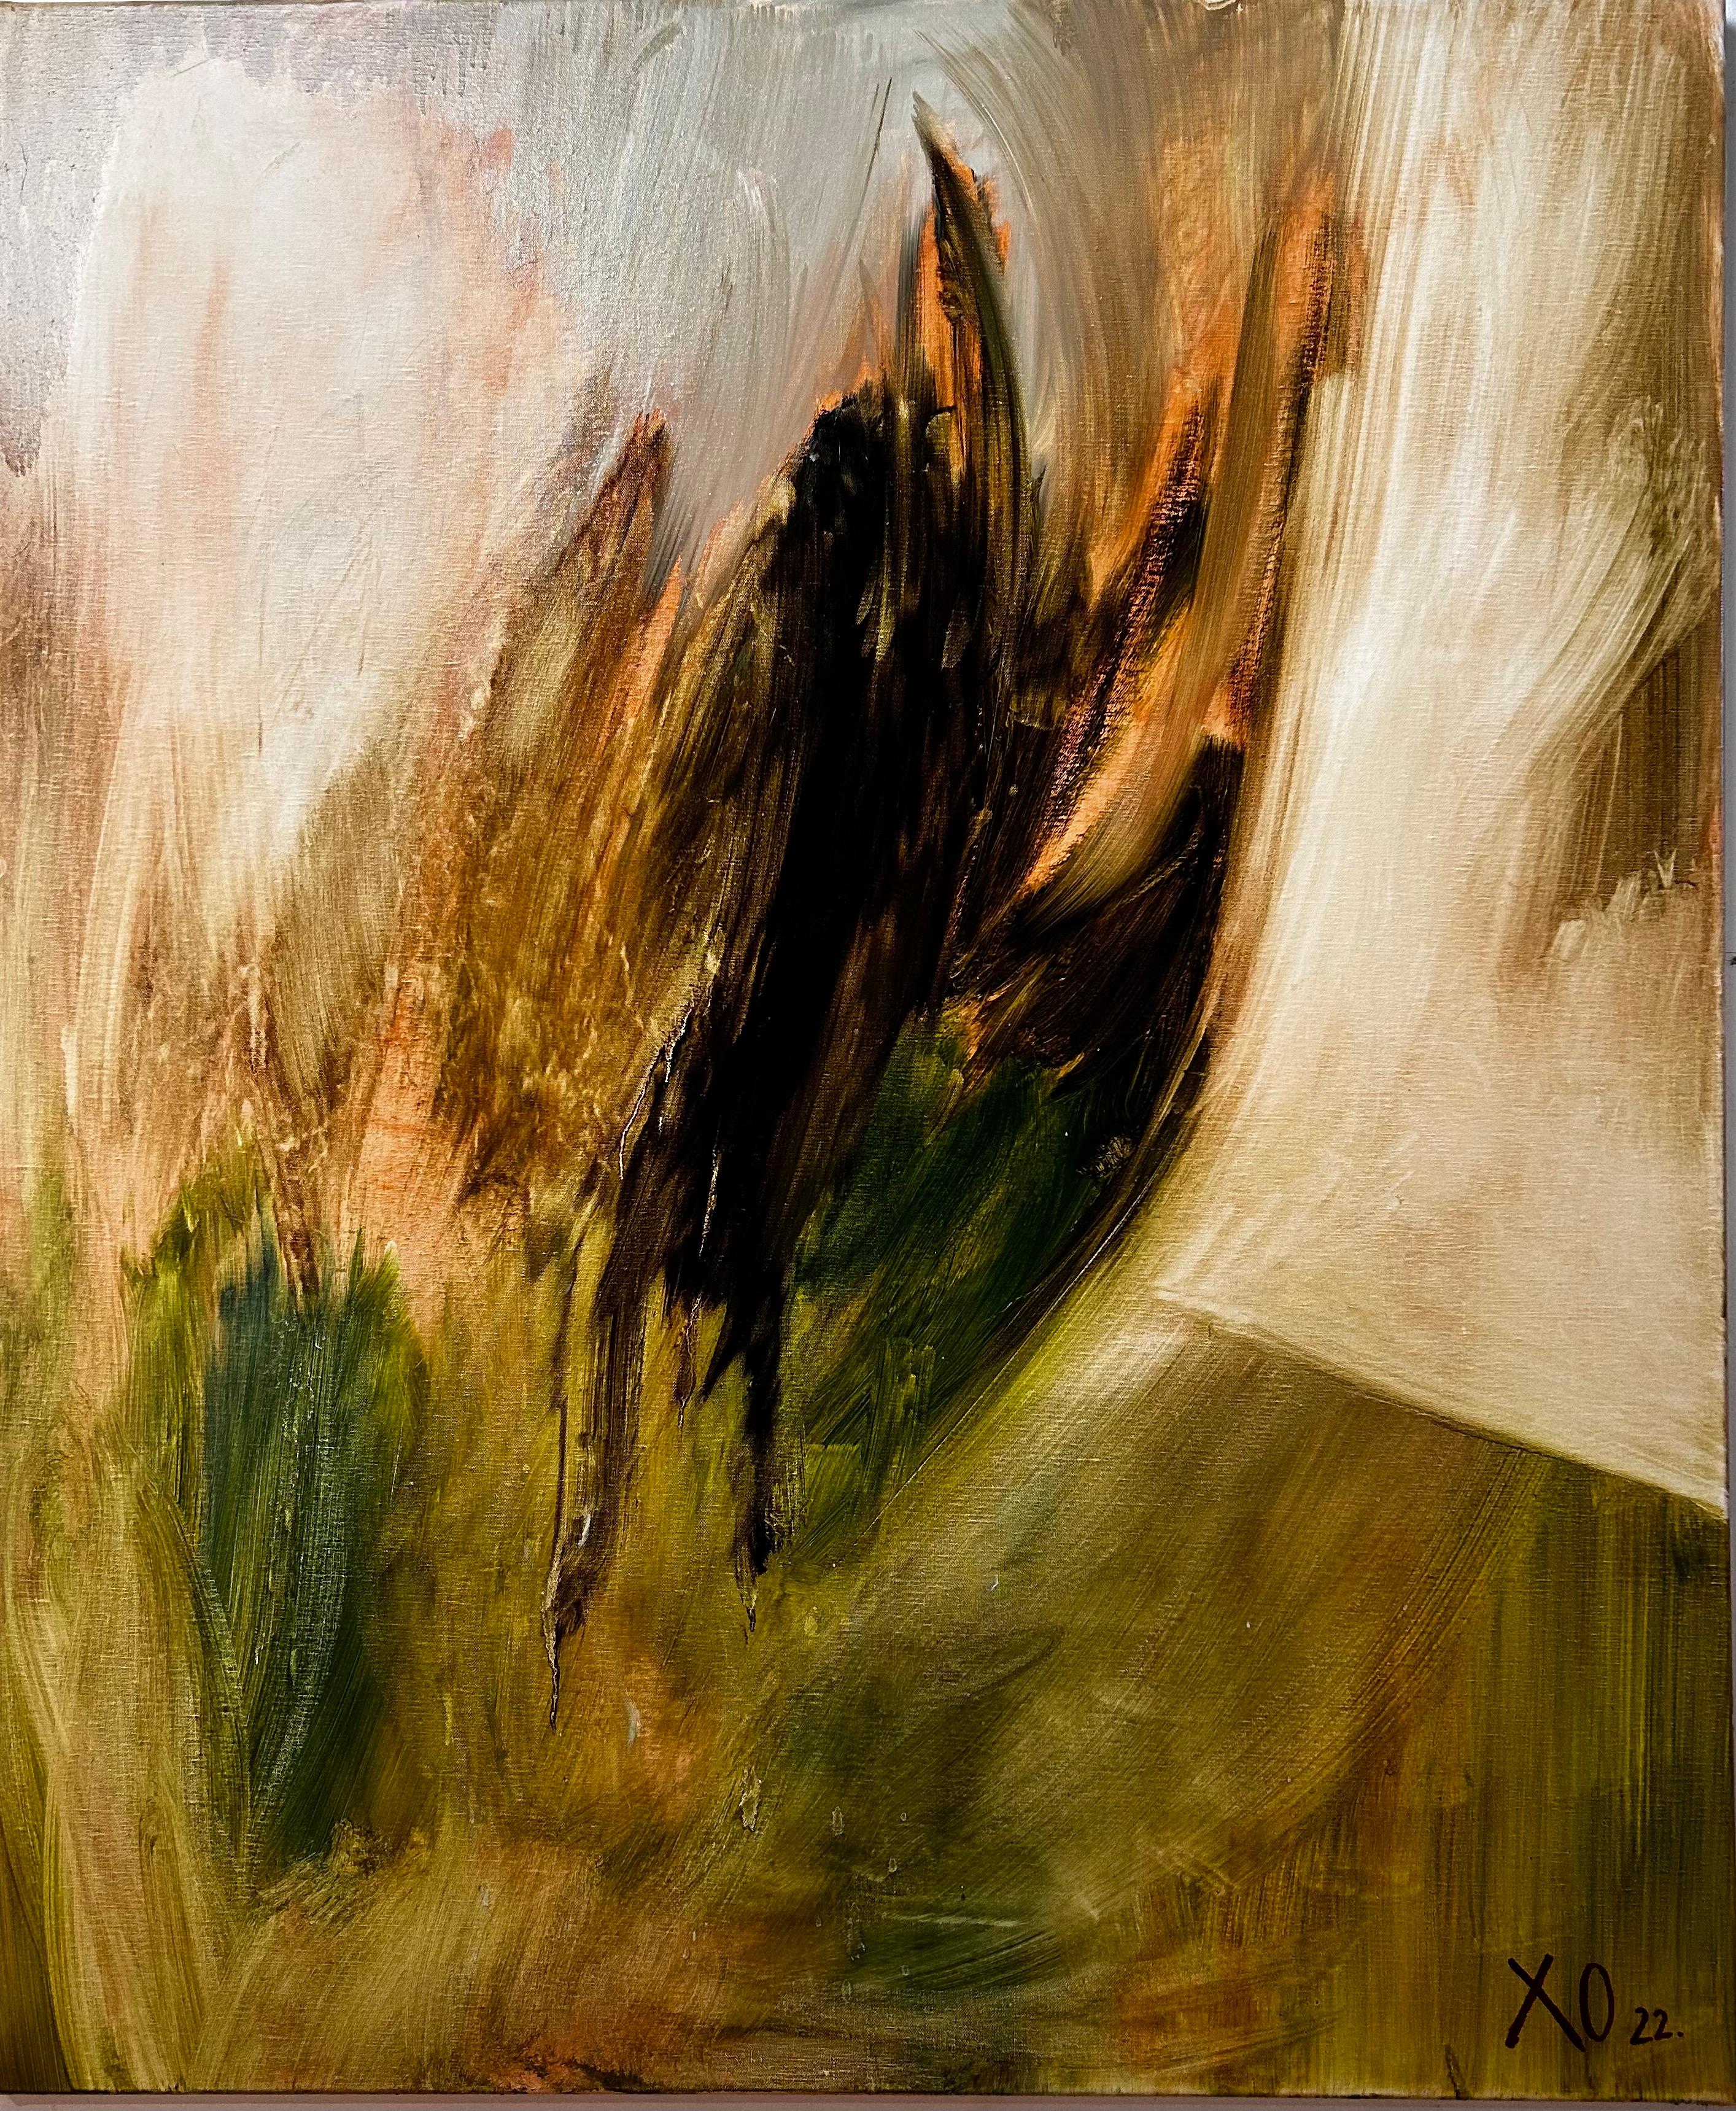 Oil on canvas
Framed - 122 x 112 x 4 cm 